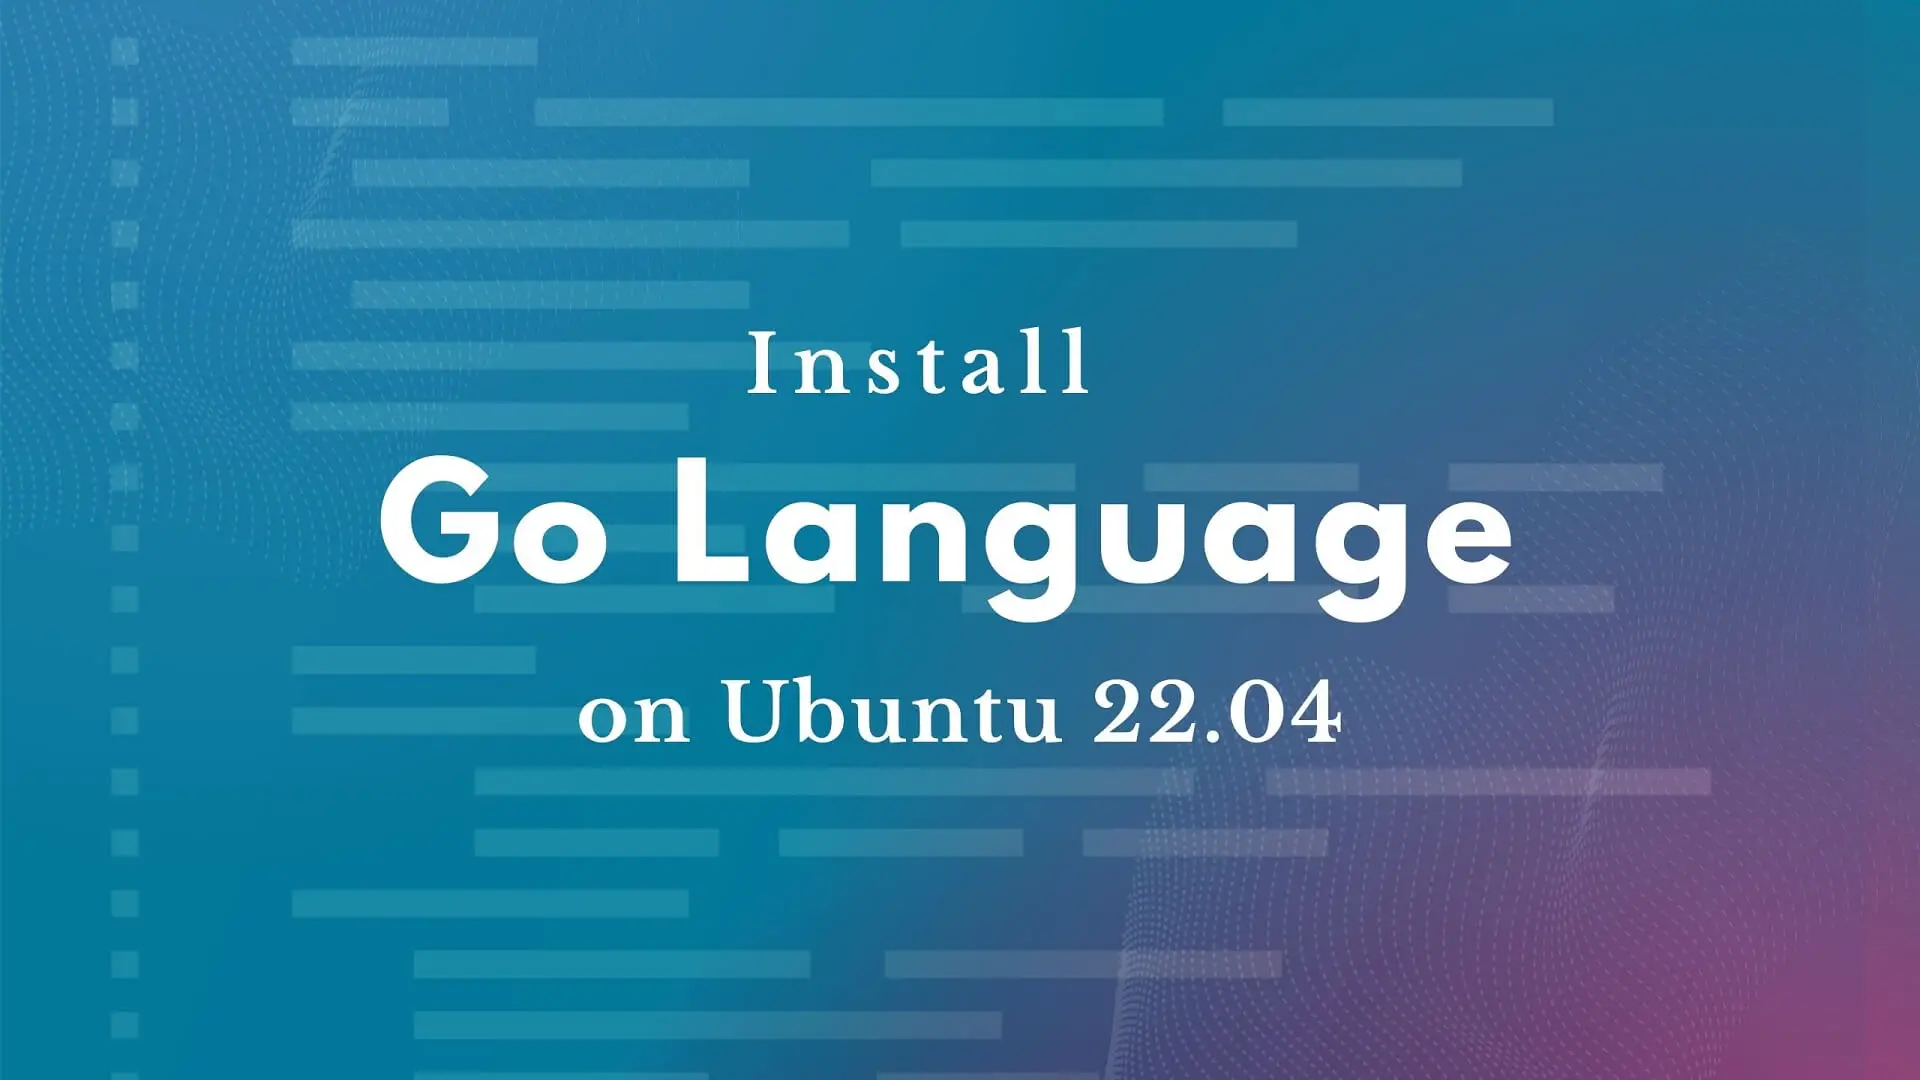 Install Go Lang on Ubuntu 22.04